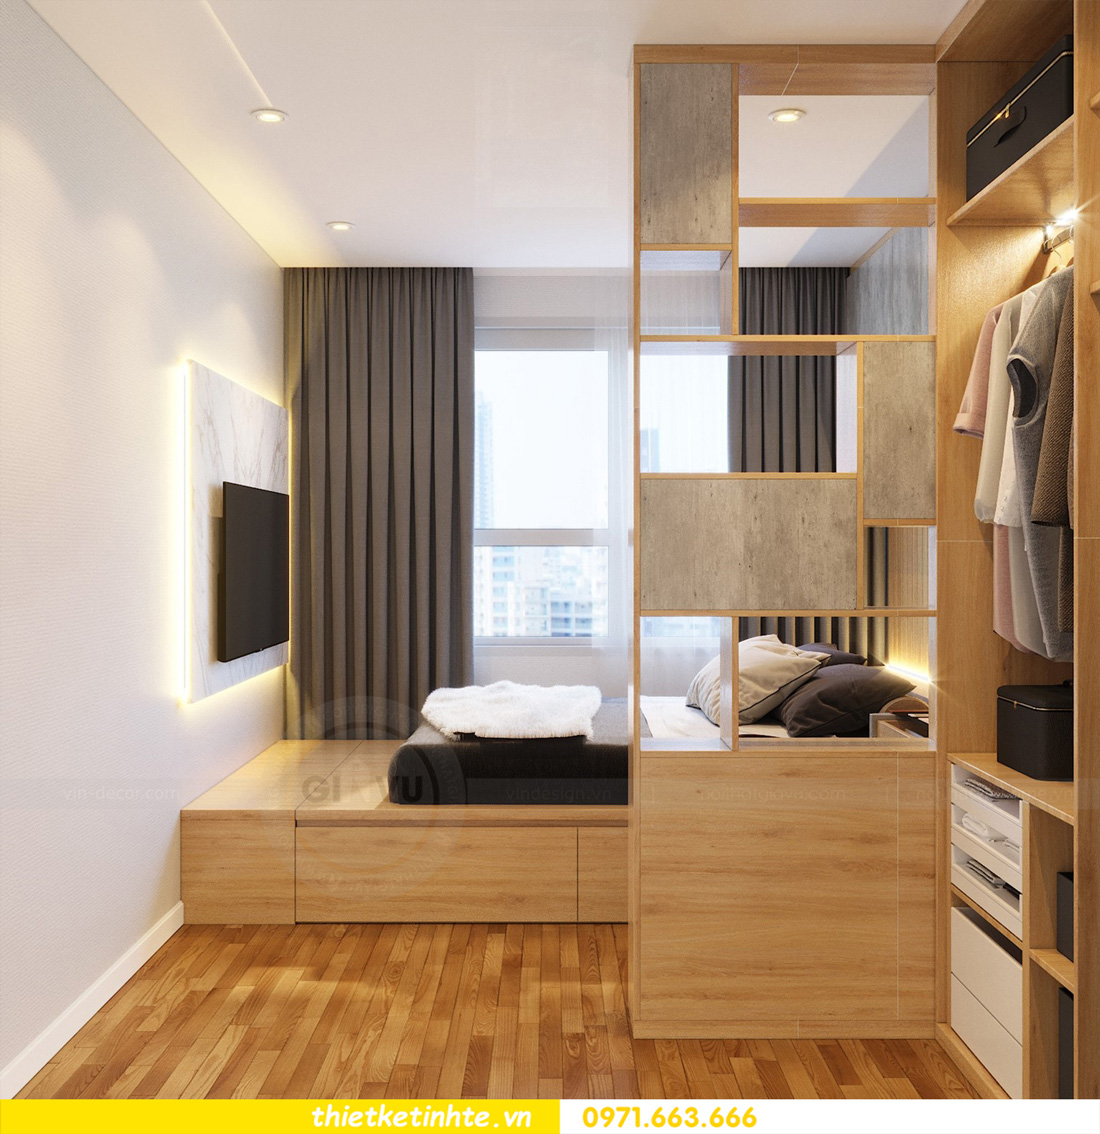 99 mẫu thiết kế nội thất phòng ngủ hiện đại cho chung cư 70